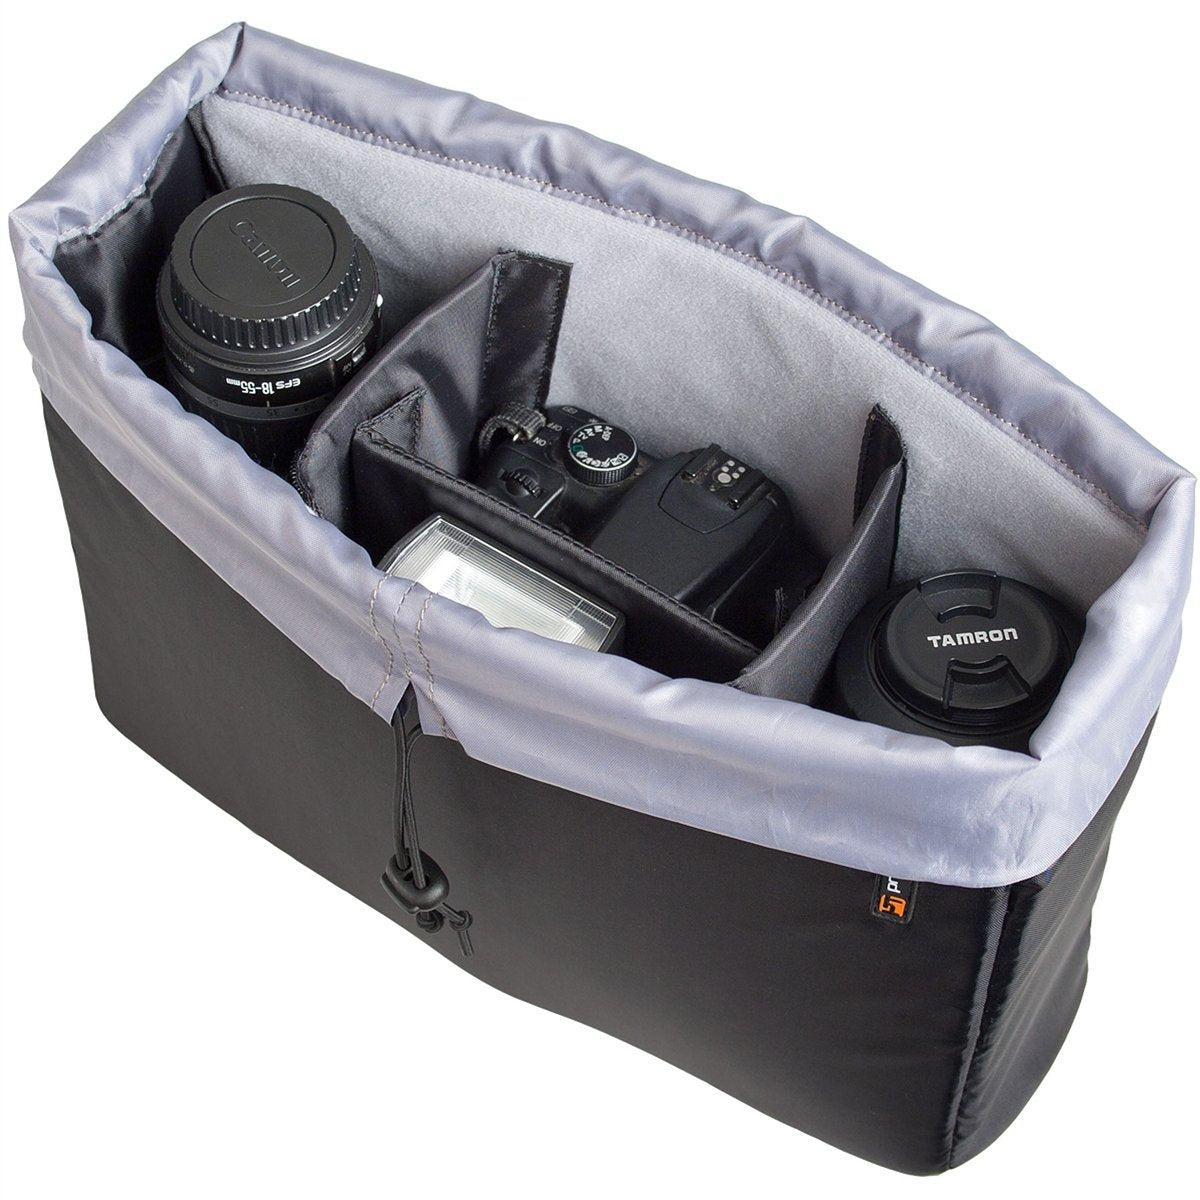 Protec - Camera Insert Bag-Accessories-Protec-Music Elements